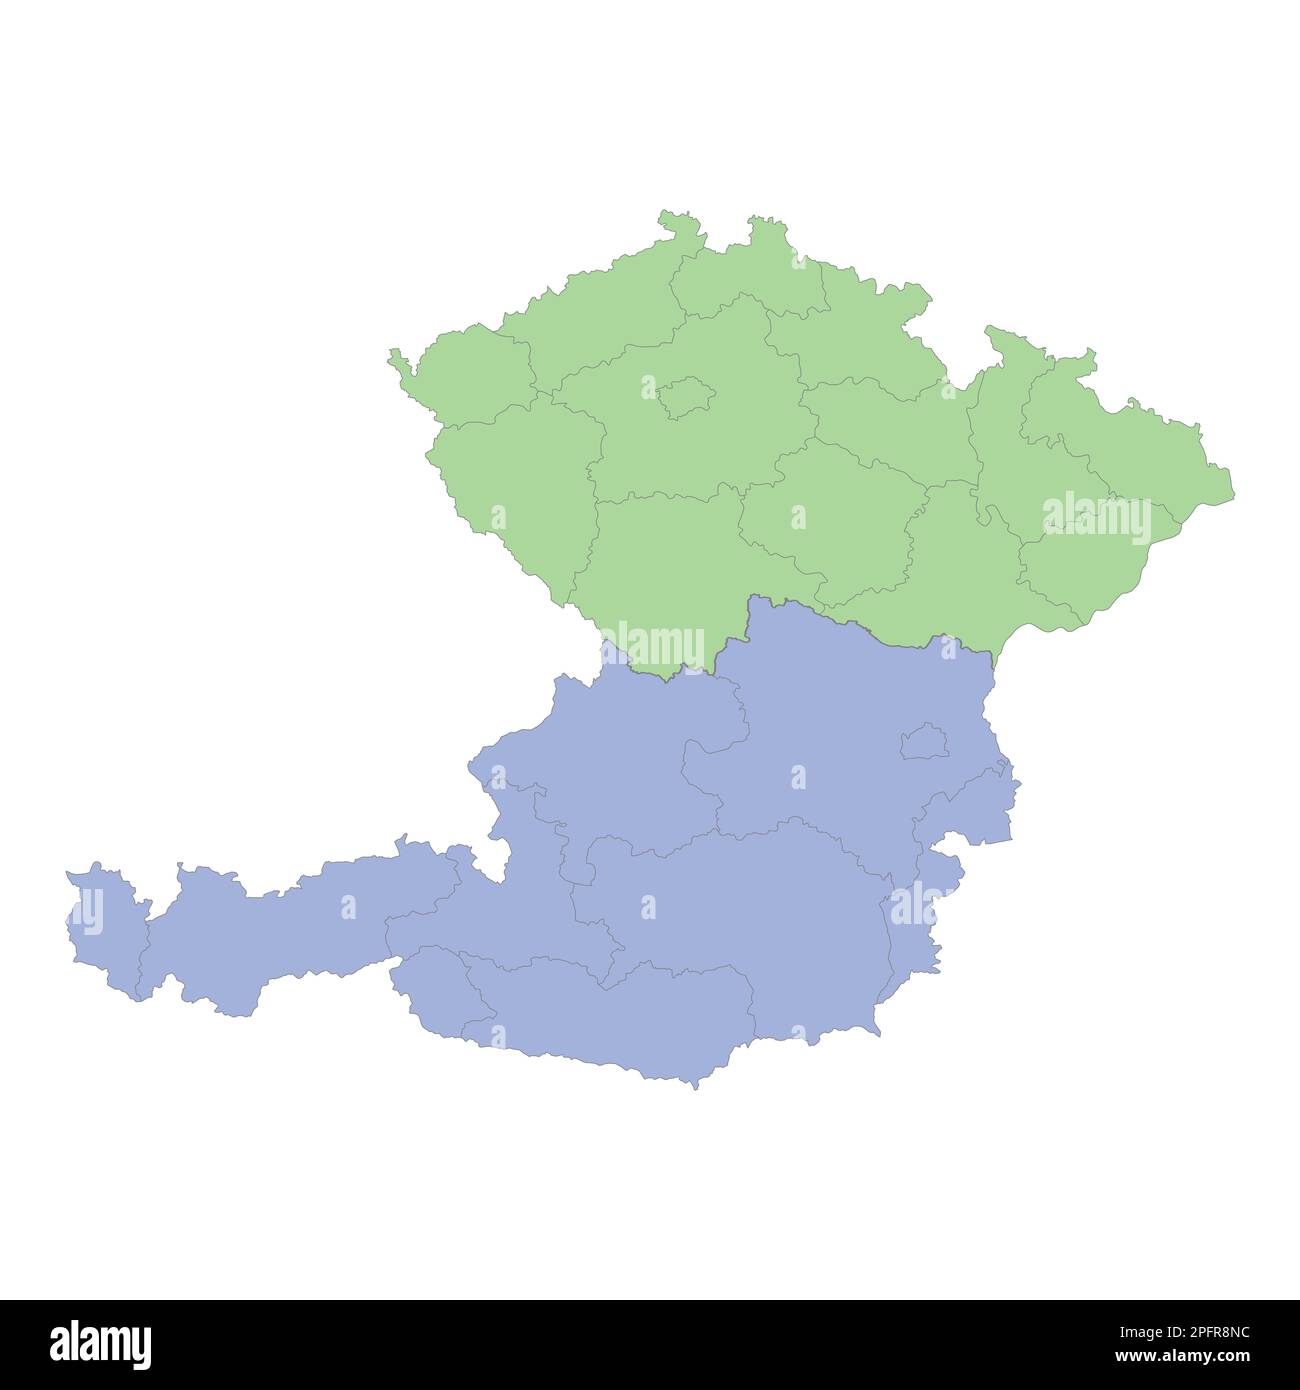 Carta politica di alta qualità dell'Austria e della repubblica Ceca con i confini delle regioni o delle province. Illustrazione vettoriale Illustrazione Vettoriale